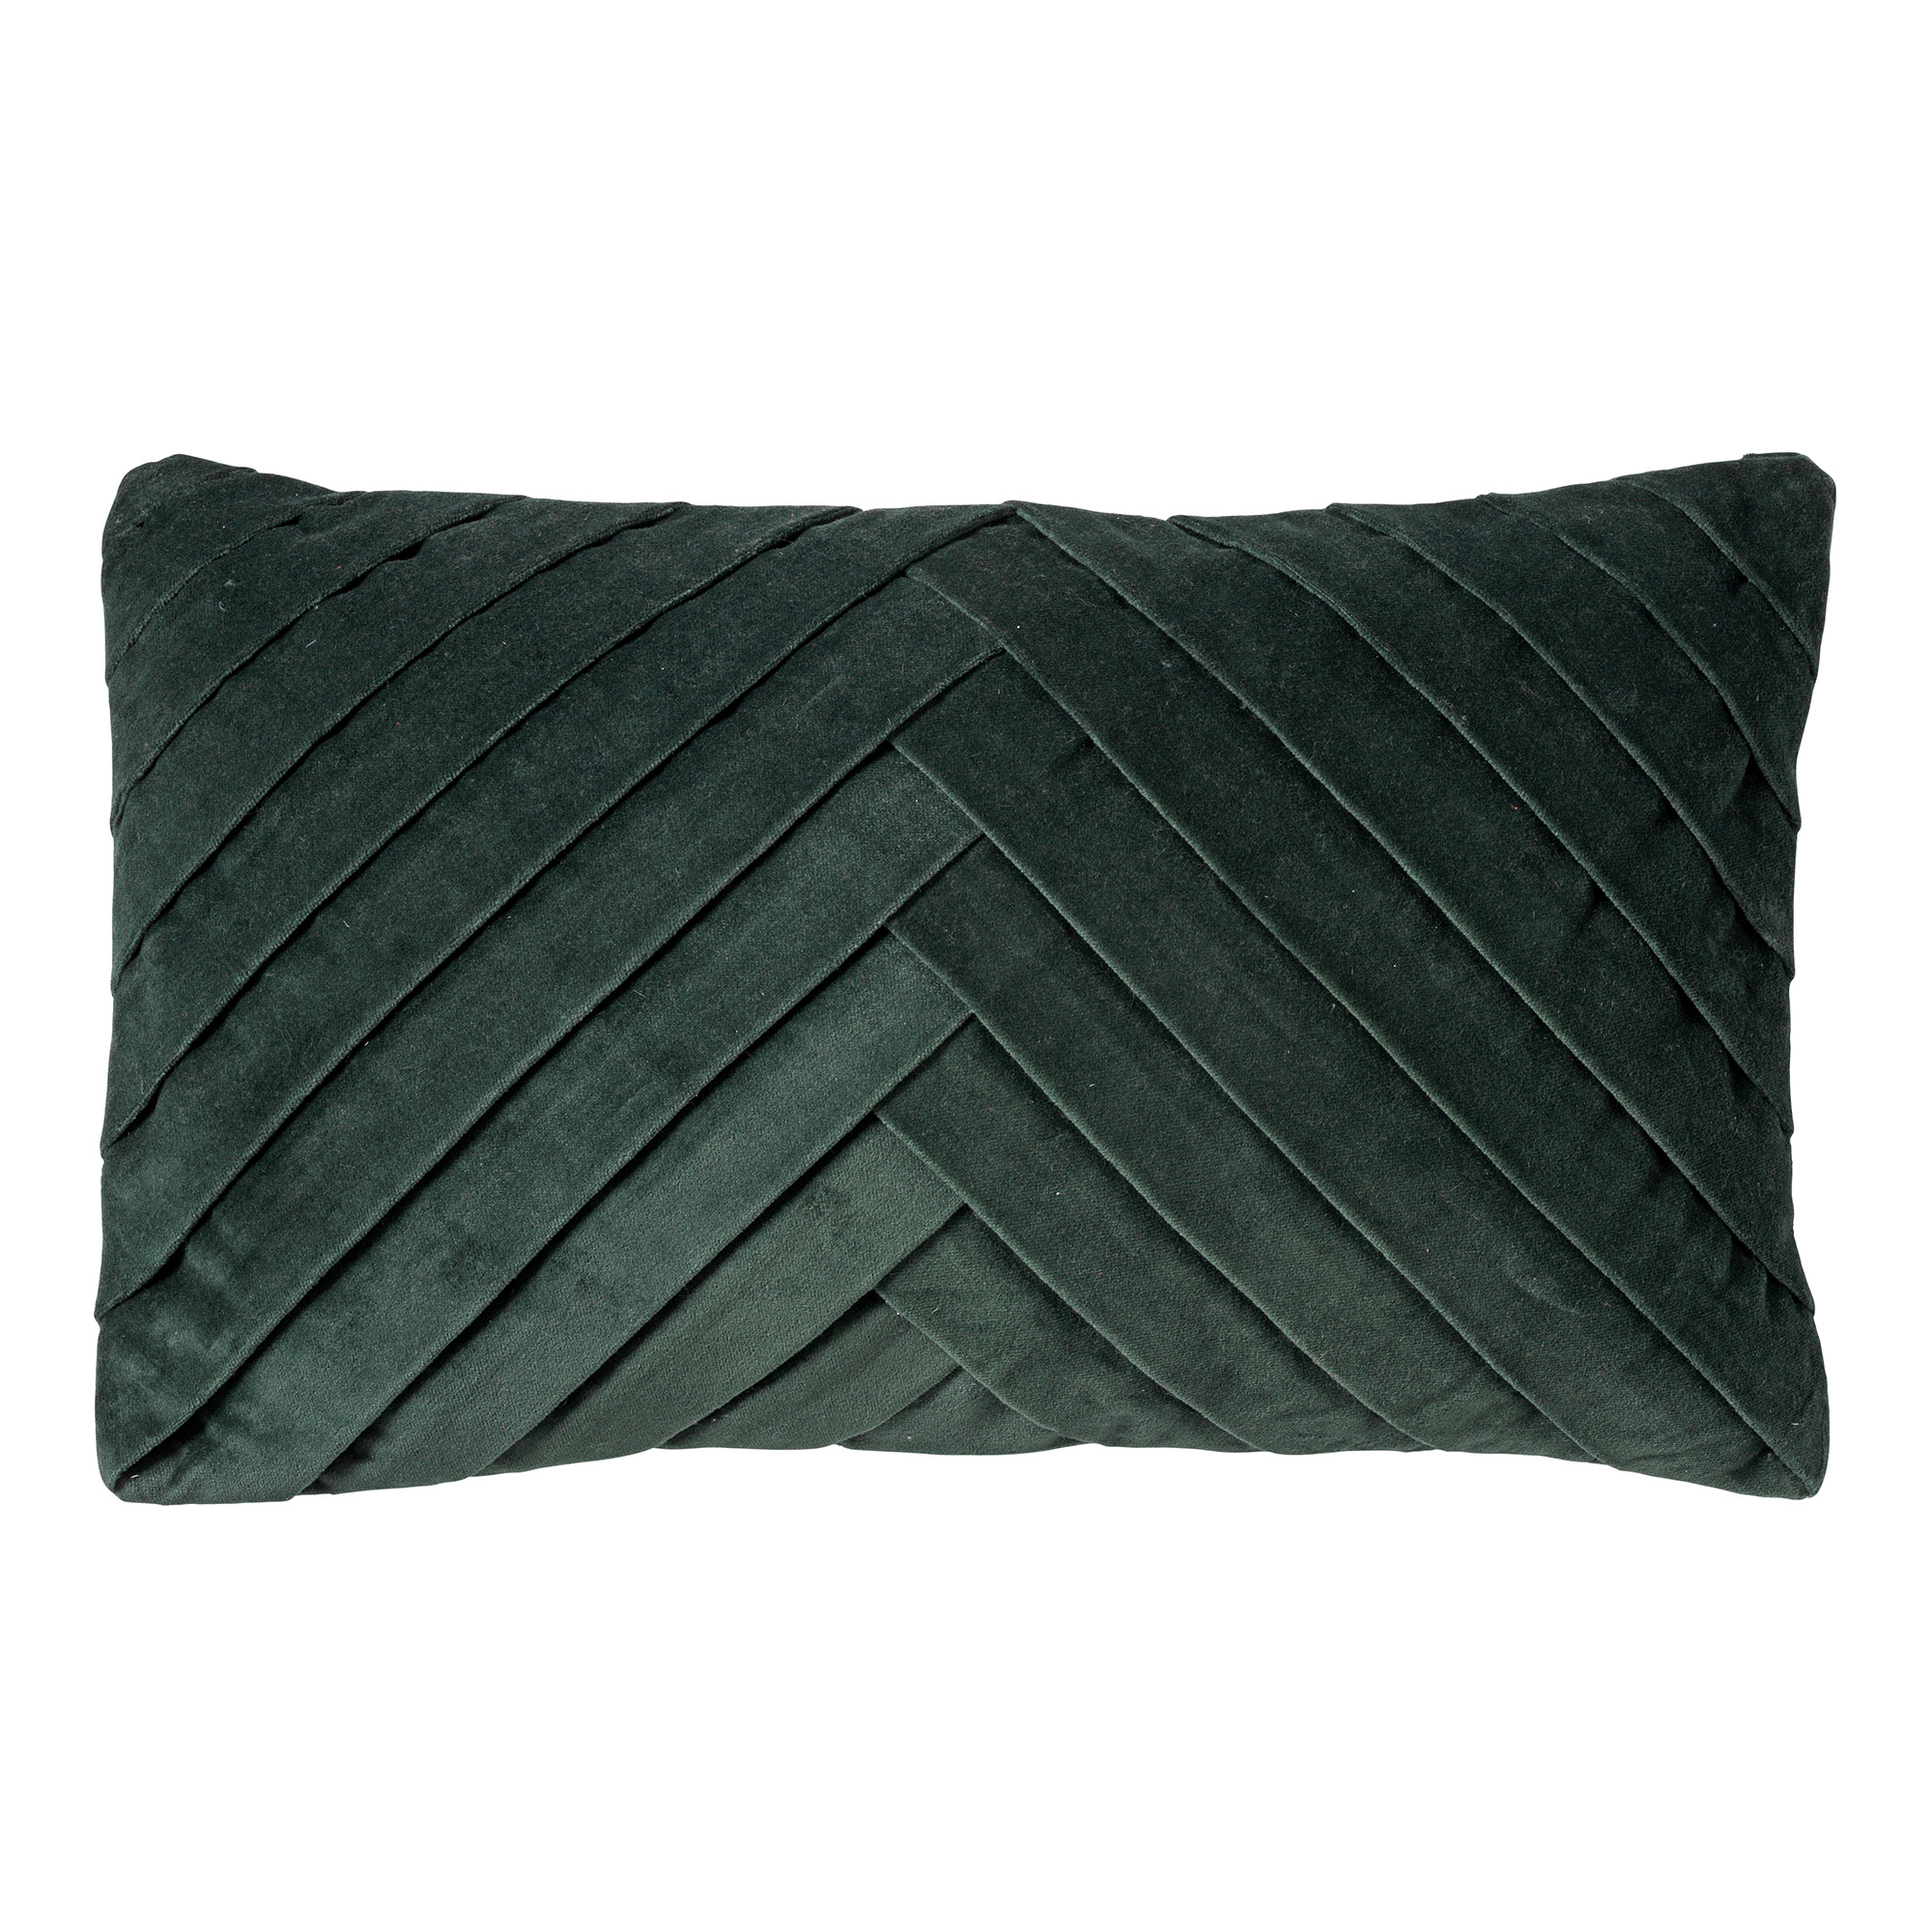 FEMM - Cushion velvet 30x50 cm - Mountain View - green